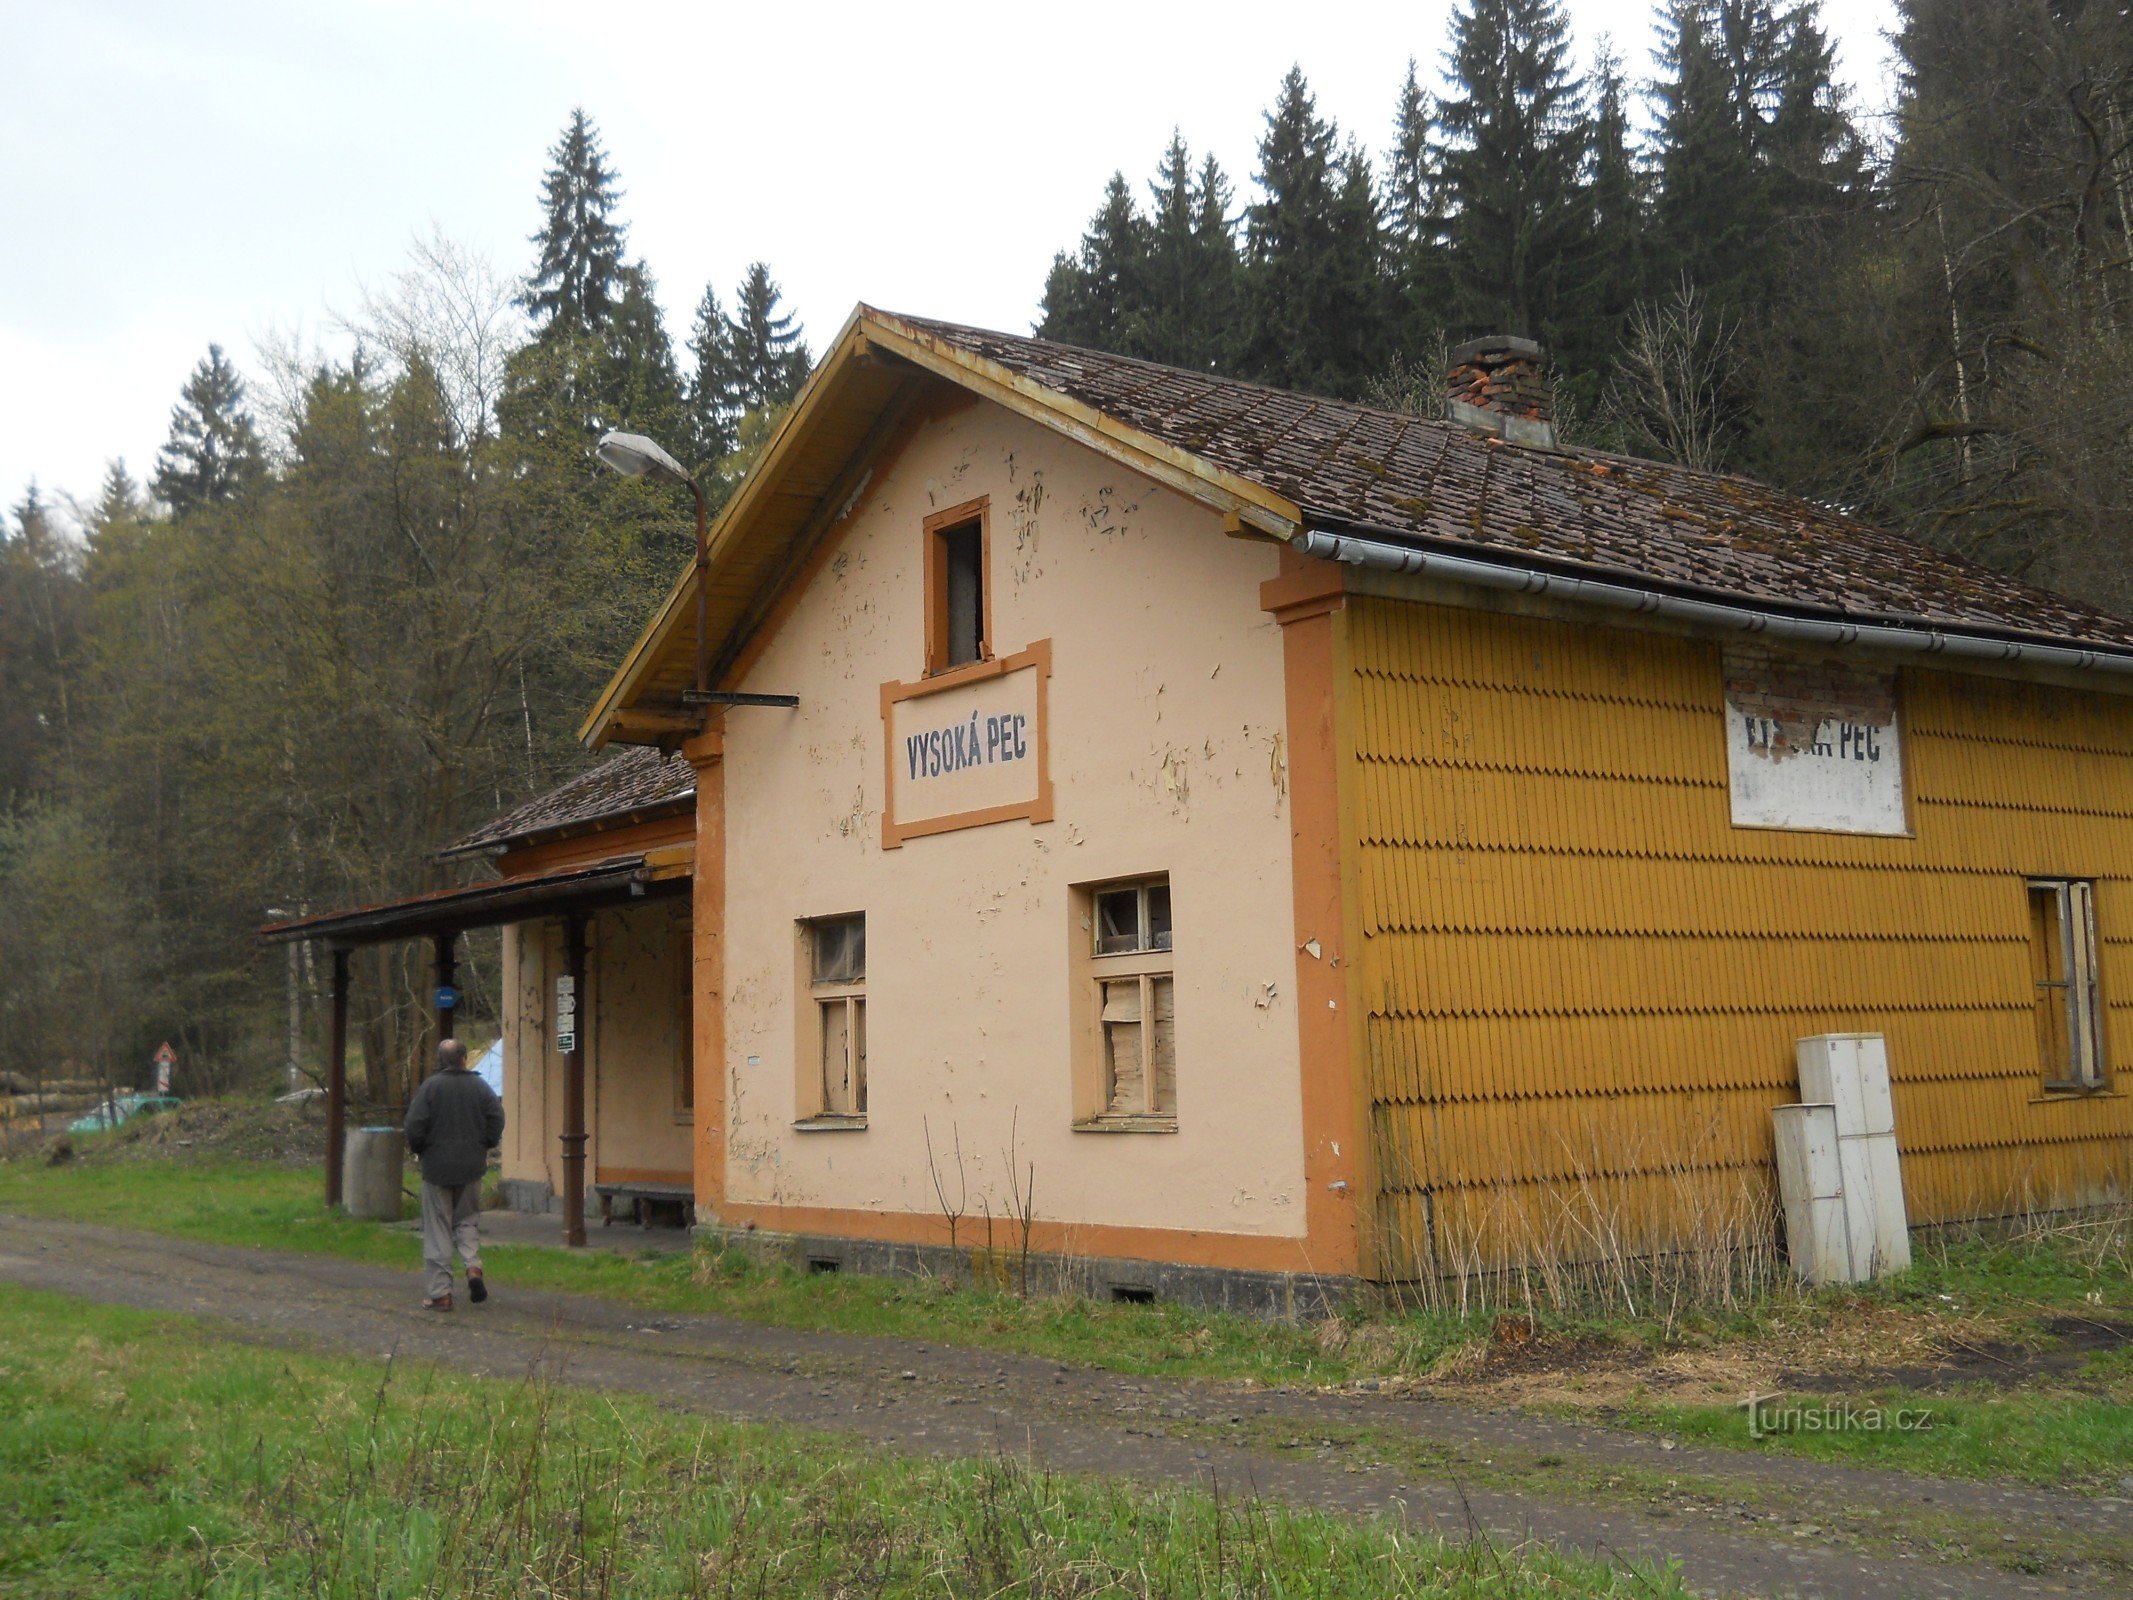 Estação Vysoká Pec